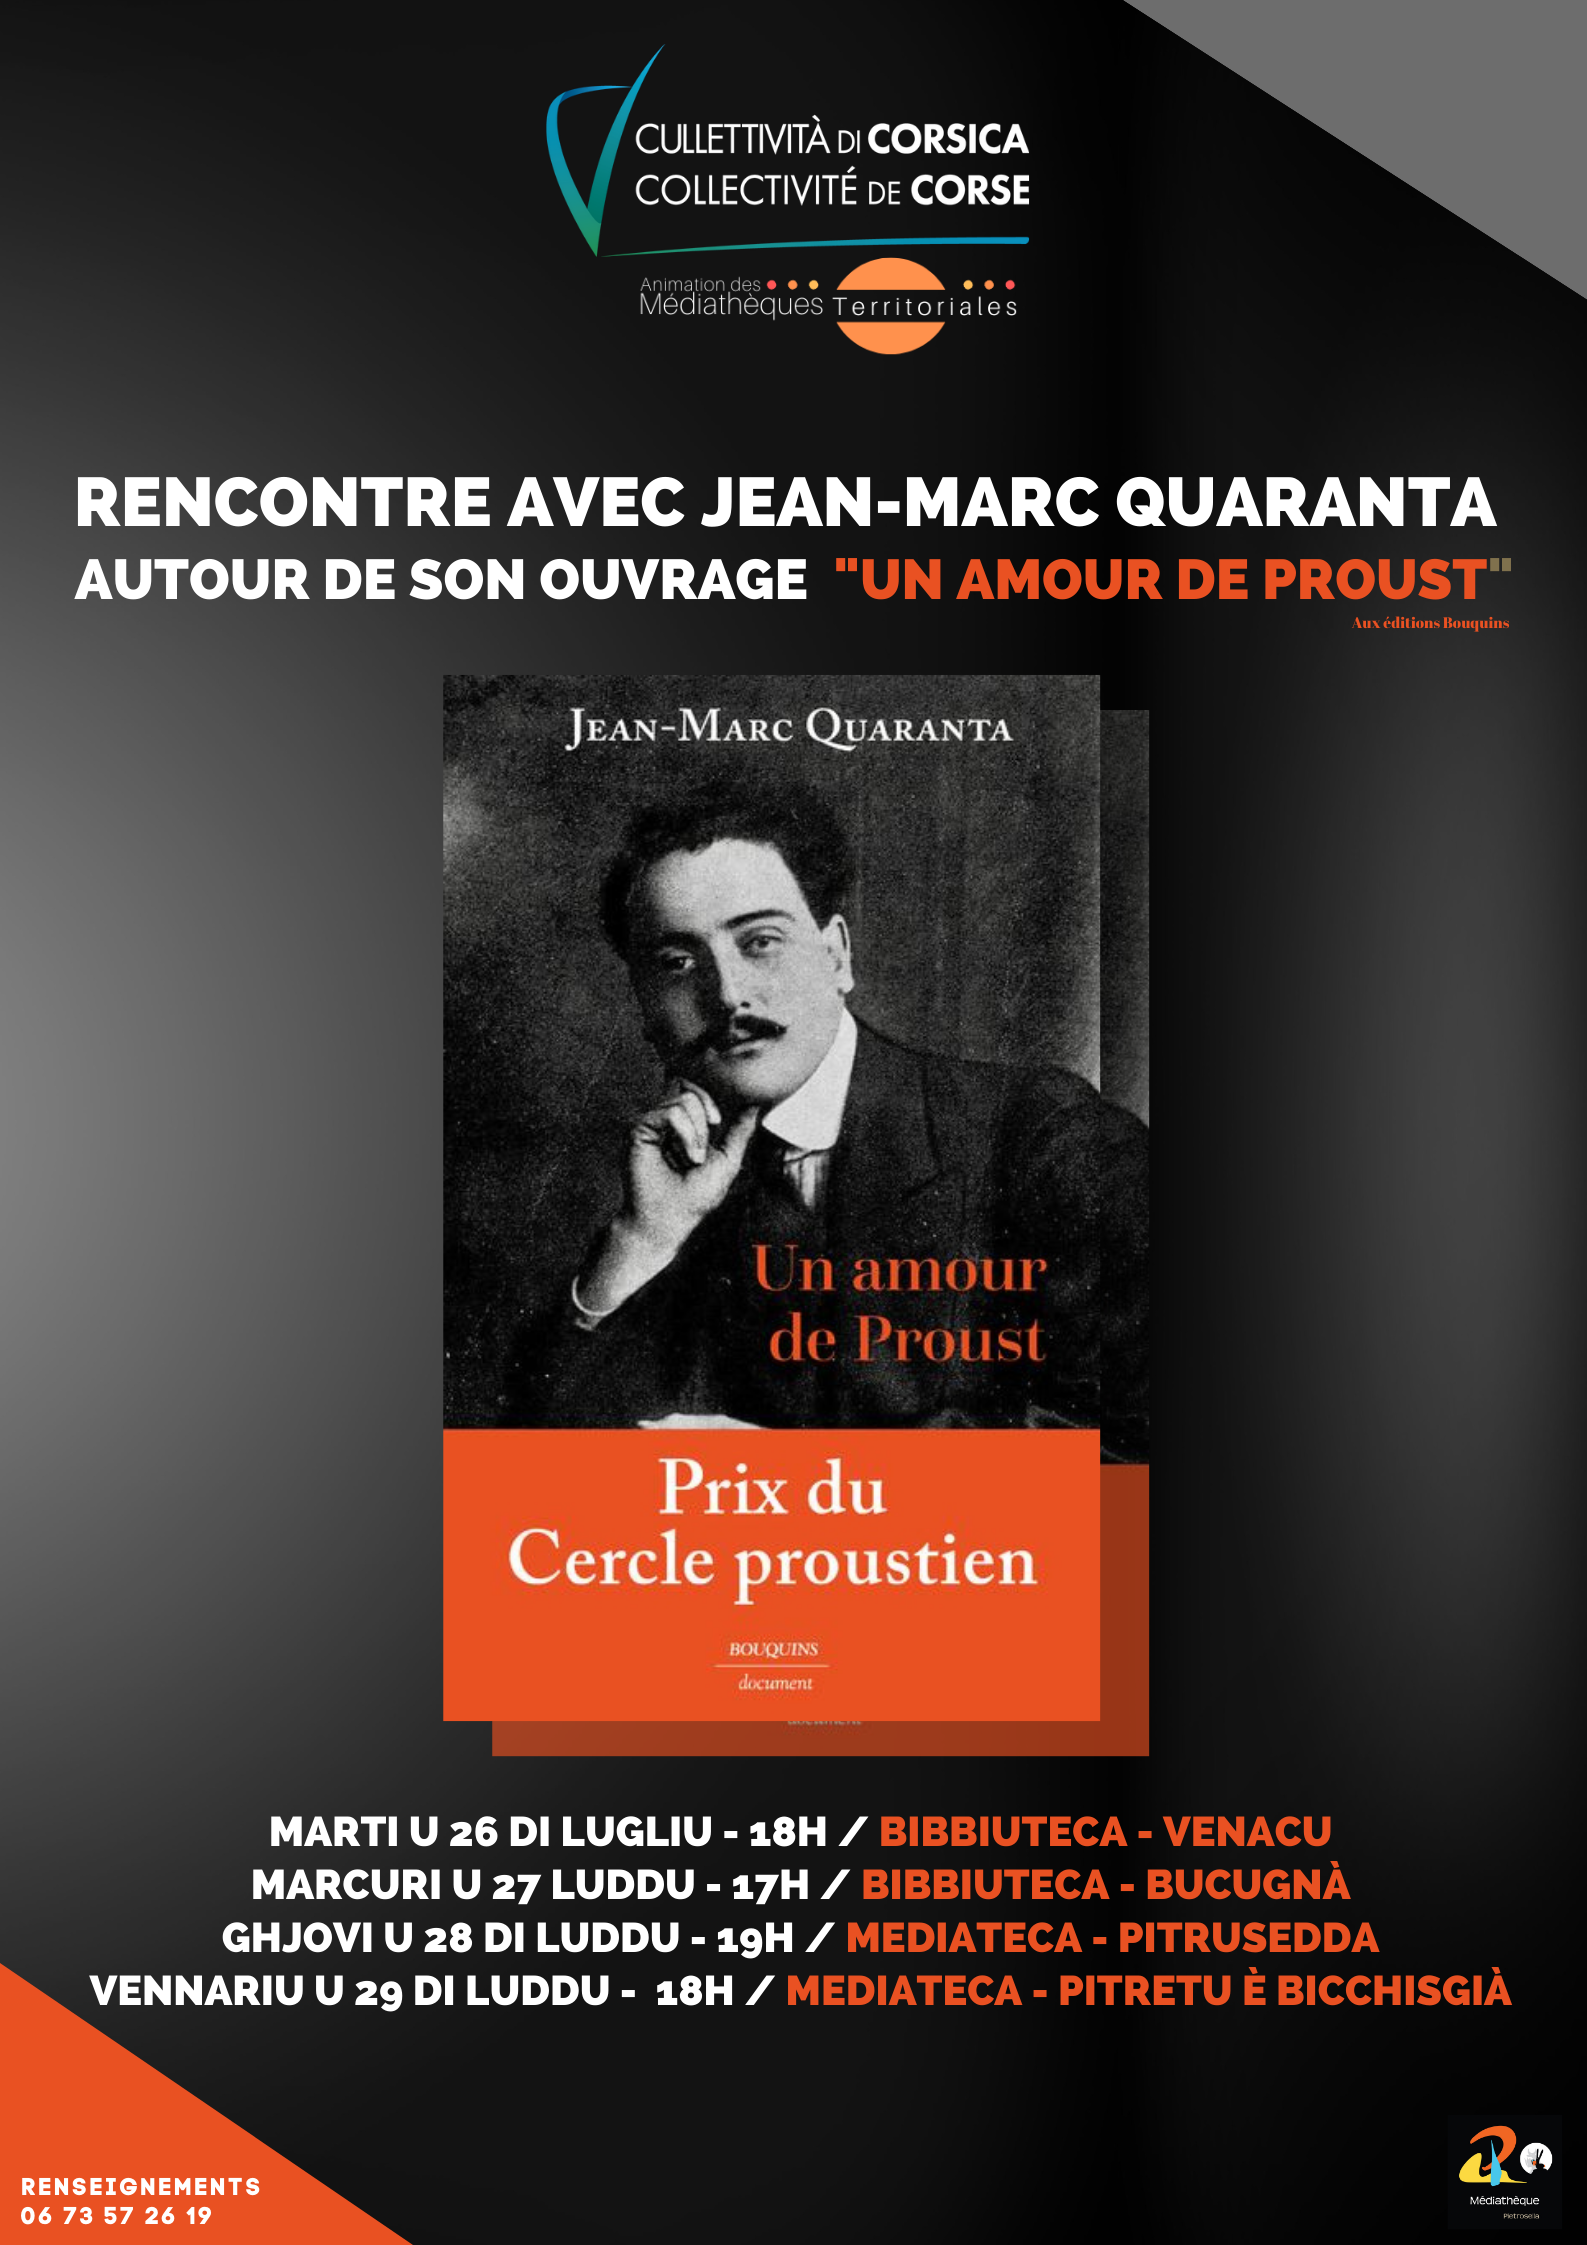 Rencontre avec Jean-Marc Quaranta autour de son ouvrage "Un amour de Proust" - Venaco / Bocognano / Pietrosella / Petreto-Bicchisano